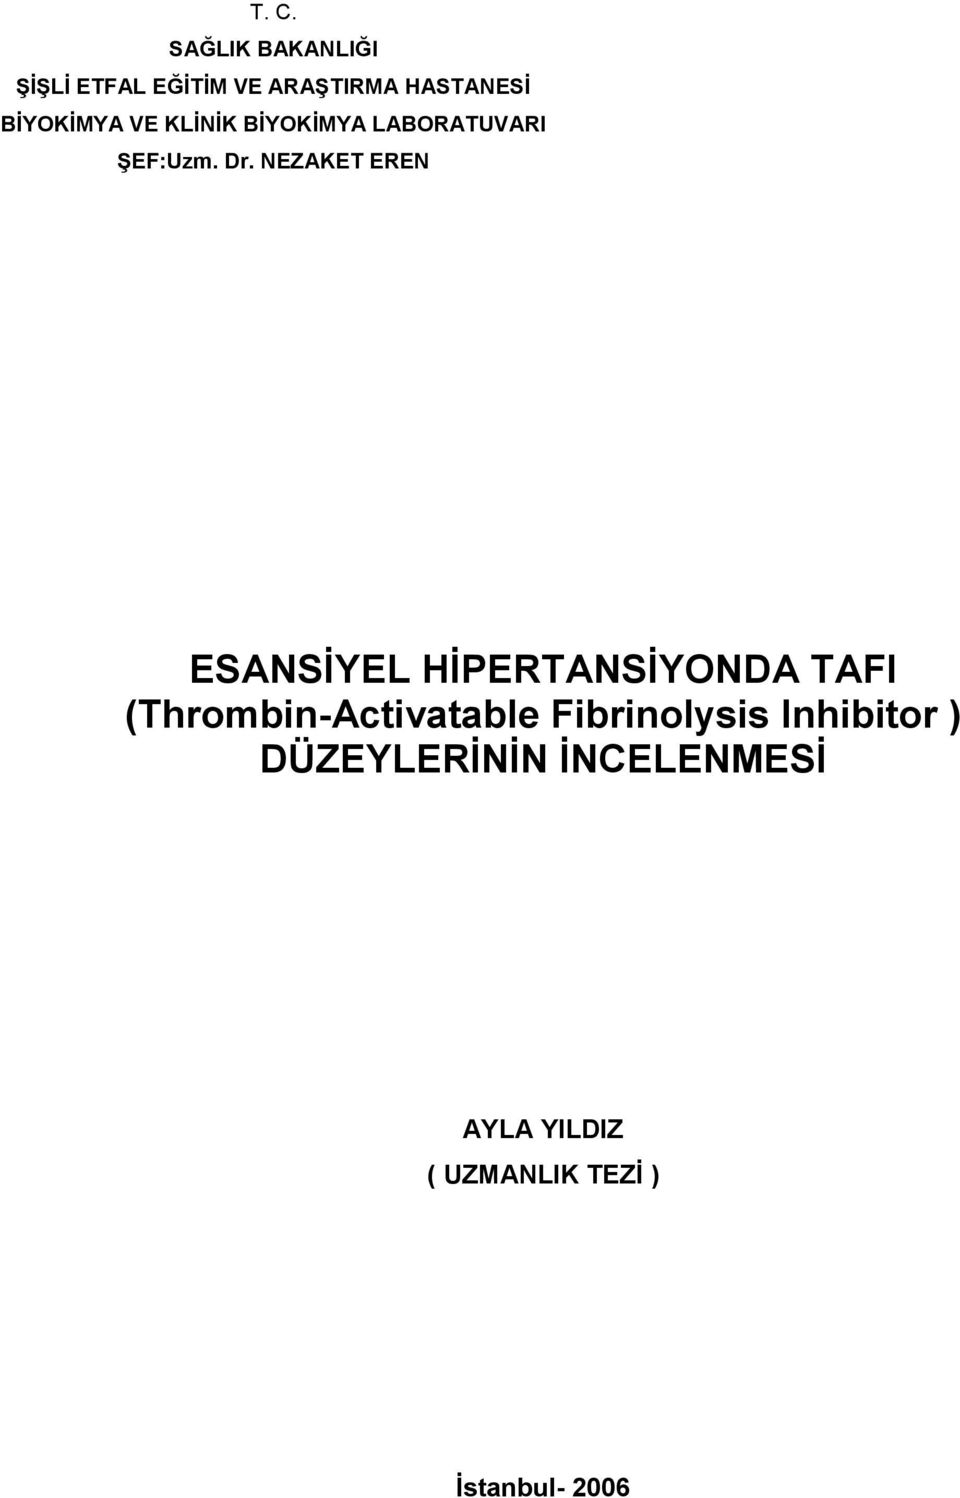 NEZAKET EREN ESANSYEL HPERTANSYONDA TAFI (Thrombin-Activatable